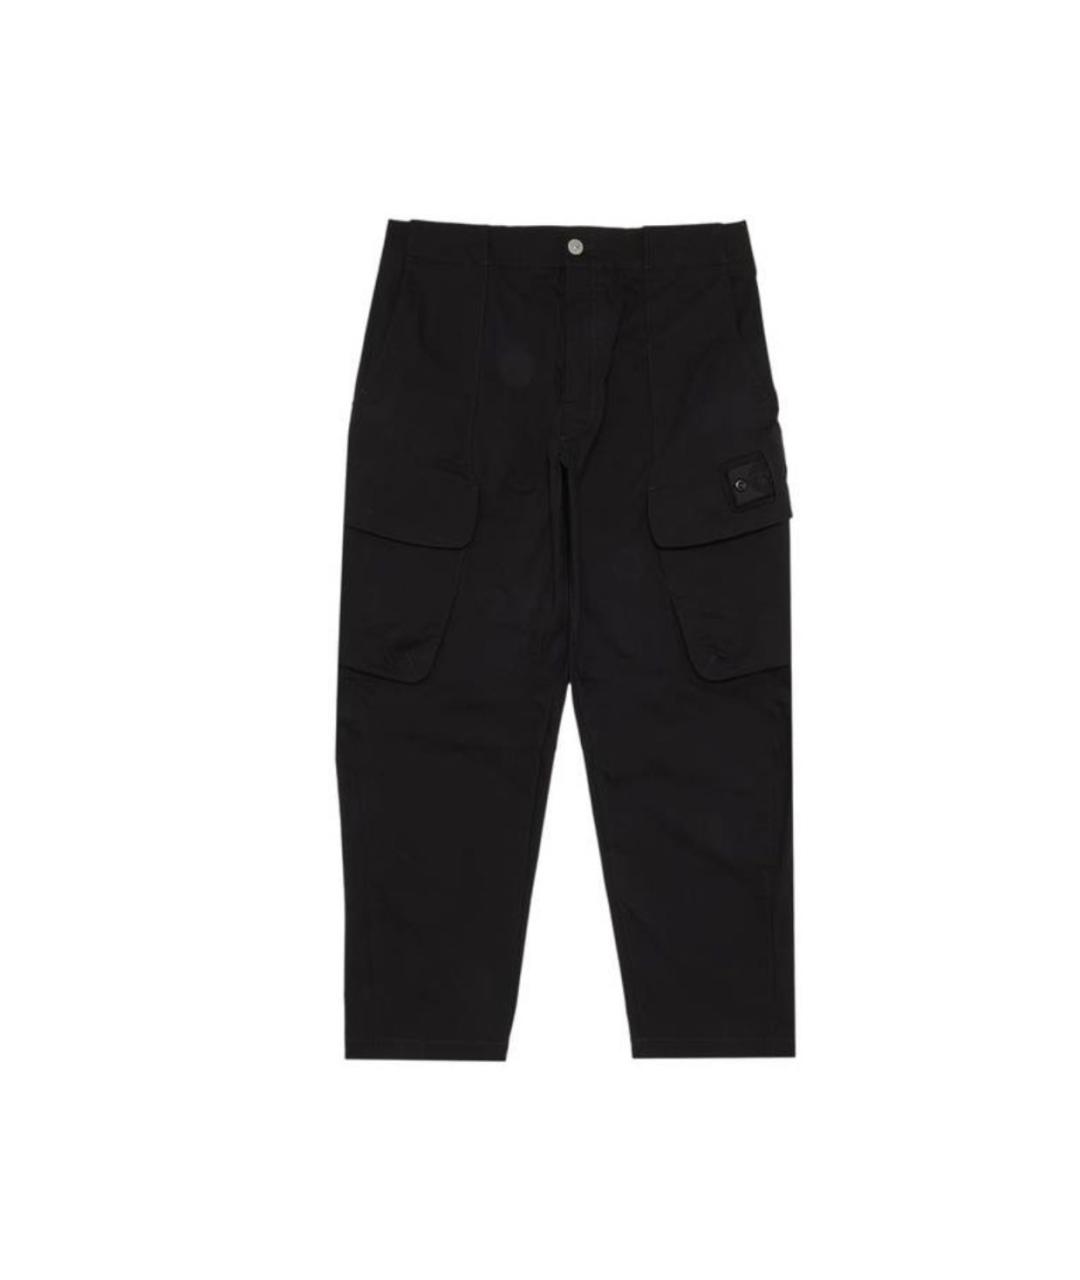 STONE ISLAND SHADOW PROJECT Черные хлопковые повседневные брюки, фото 1